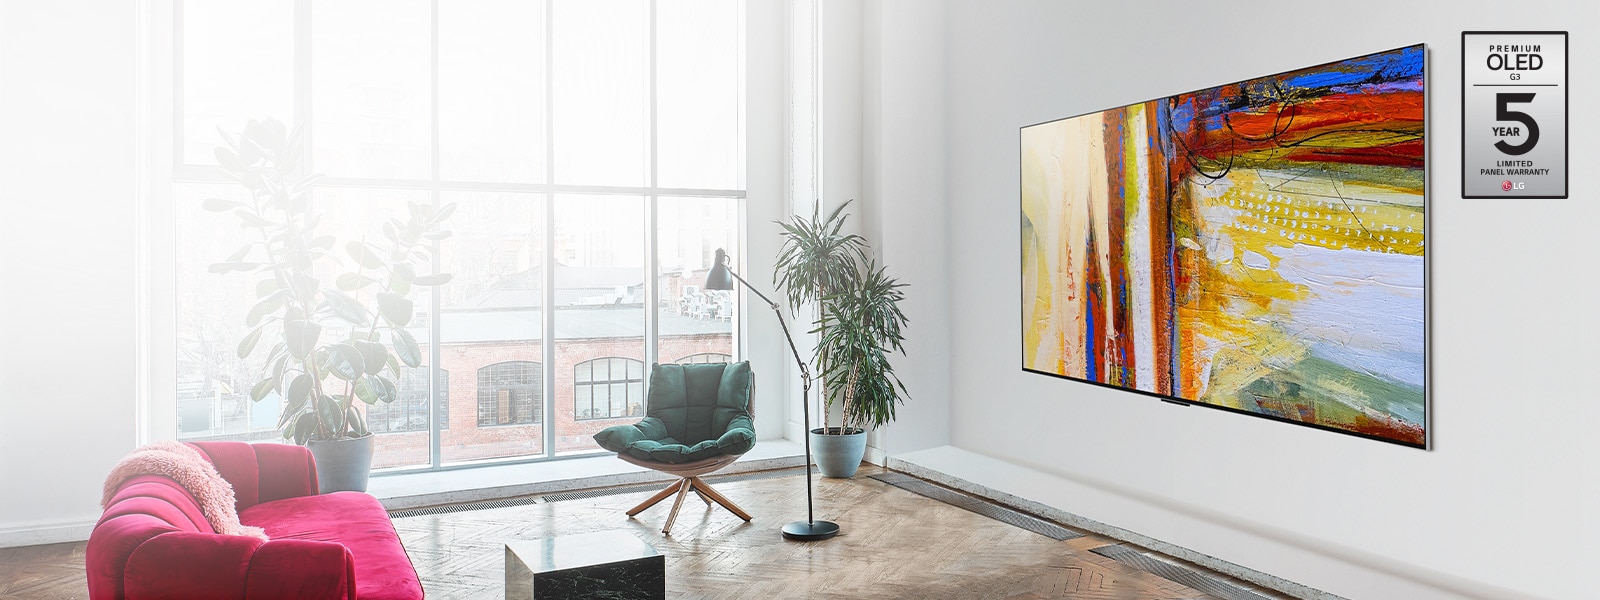 Slika LG OLED G3, ki prikazuje barvito abstraktno umetniško delo v svetli in svetli sobi.